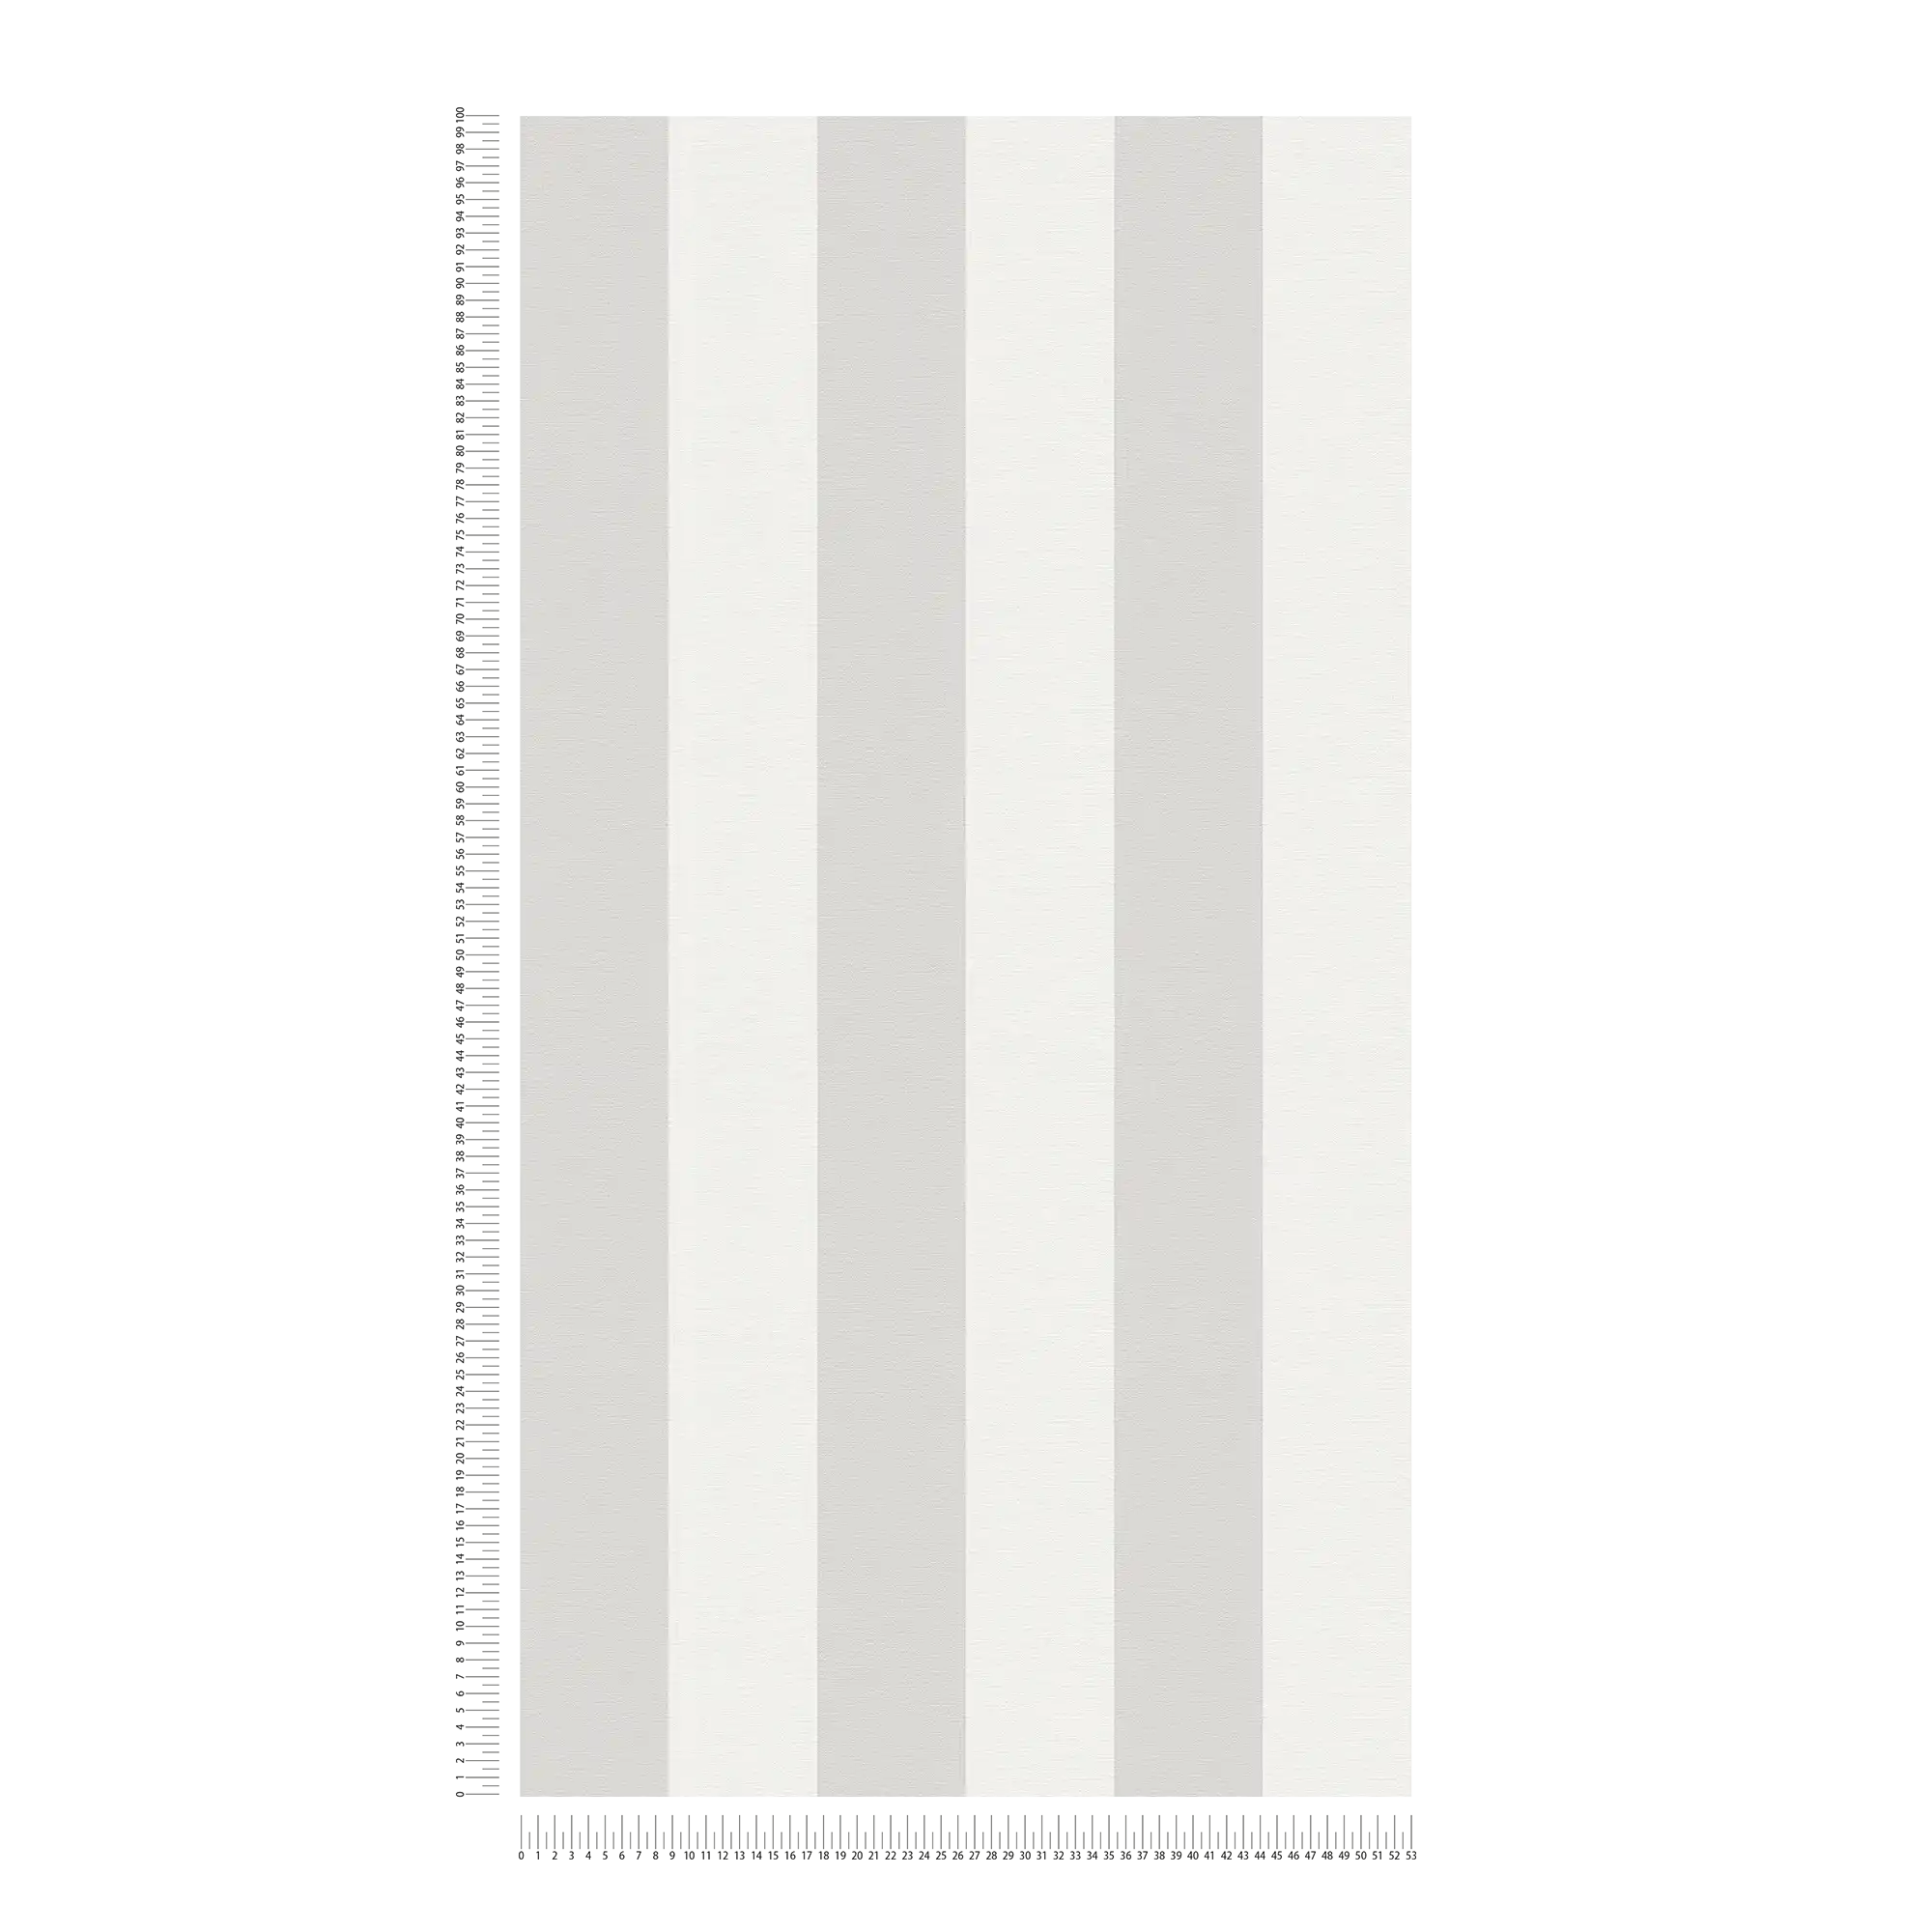             Blokstreepbehang met textiellook voor jong design - grijs, wit
        